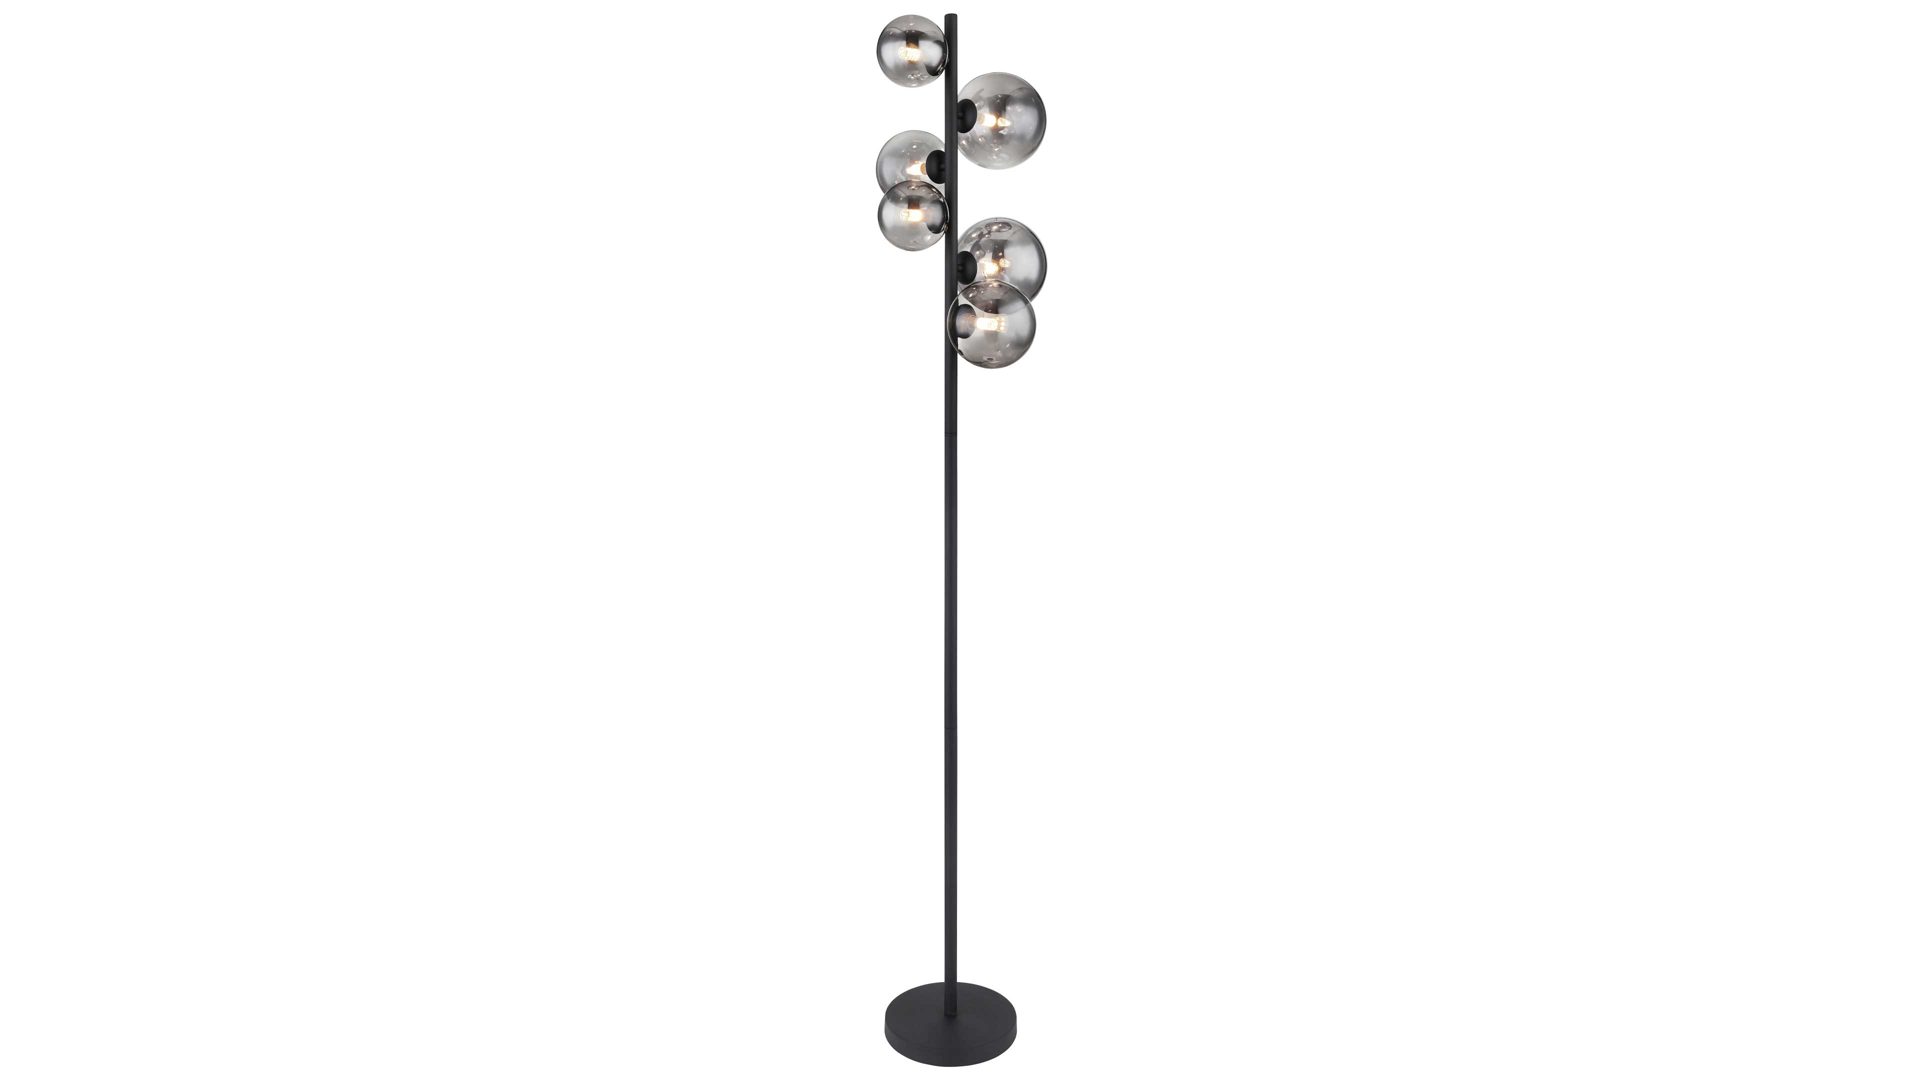 Stehleuchte Globo lighting aus Glas in Schwarz GLOBO Lampe-Serie Riha - Stehleuchte Rauchglas & mattschwarzes Metall - Höhe ca. 155 cm